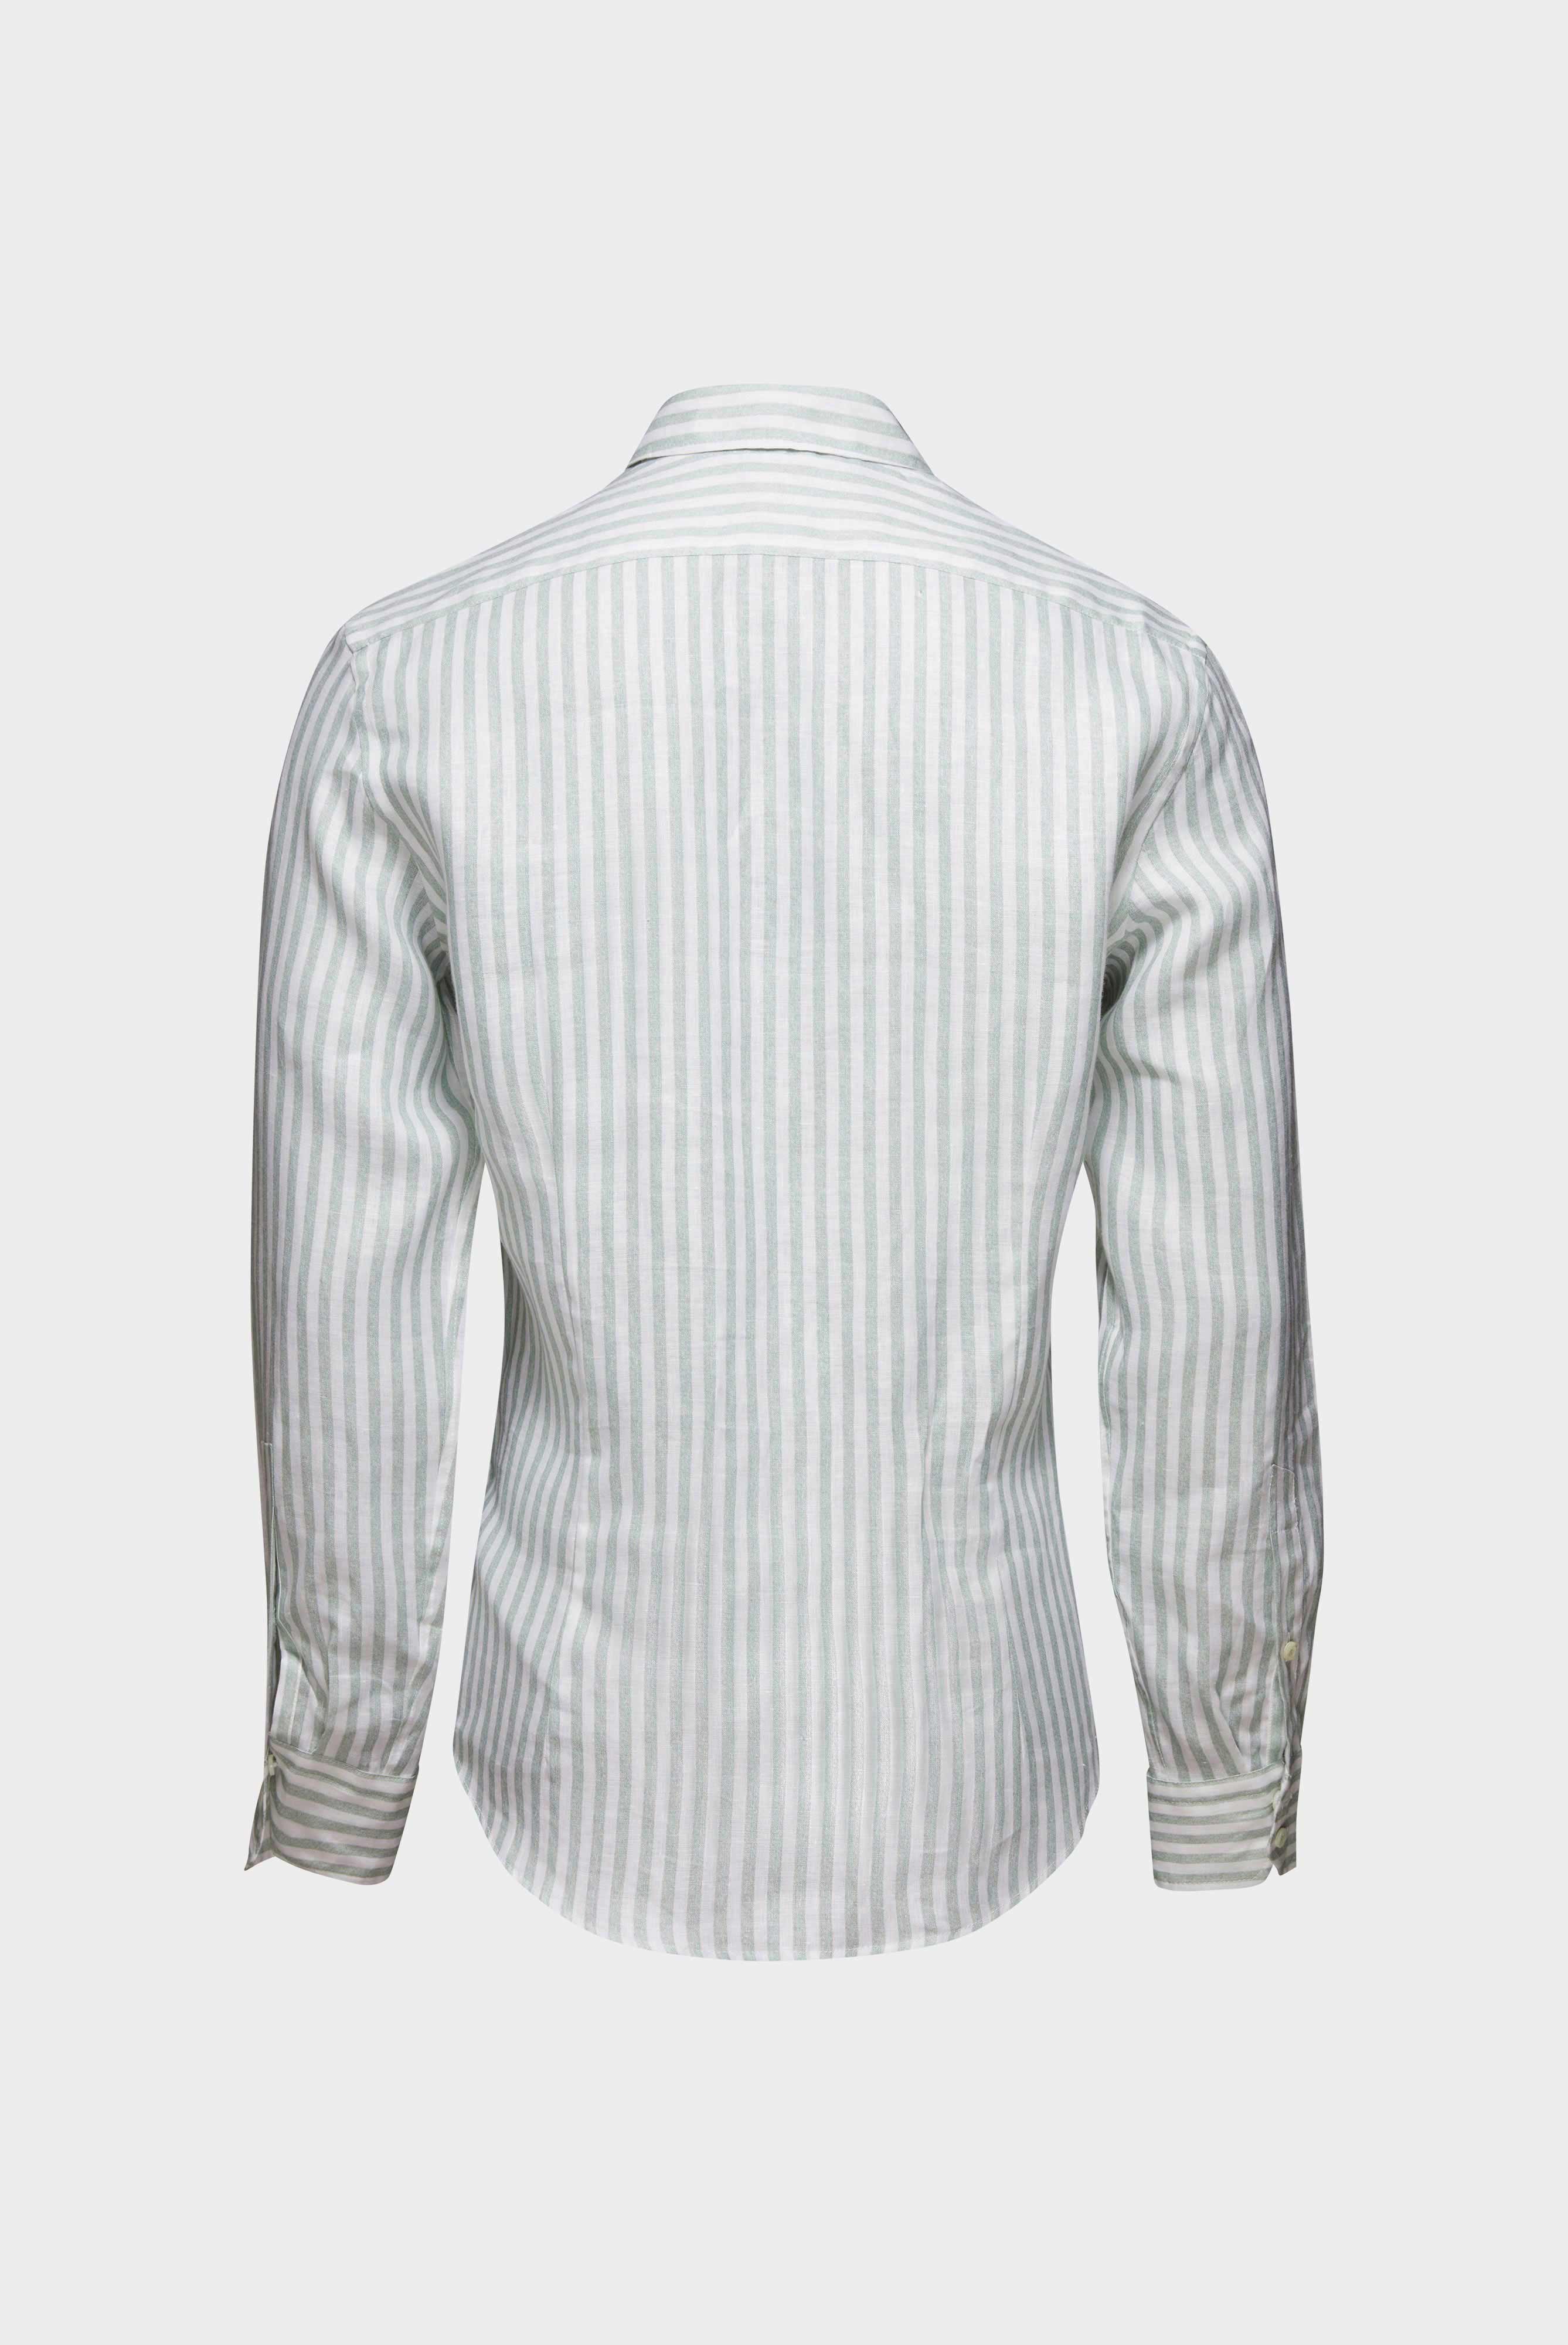 Casual Hemden+Leinenhemd mit Streifen-Druck Tailor Fit+20.2013.9V.170352.940.42